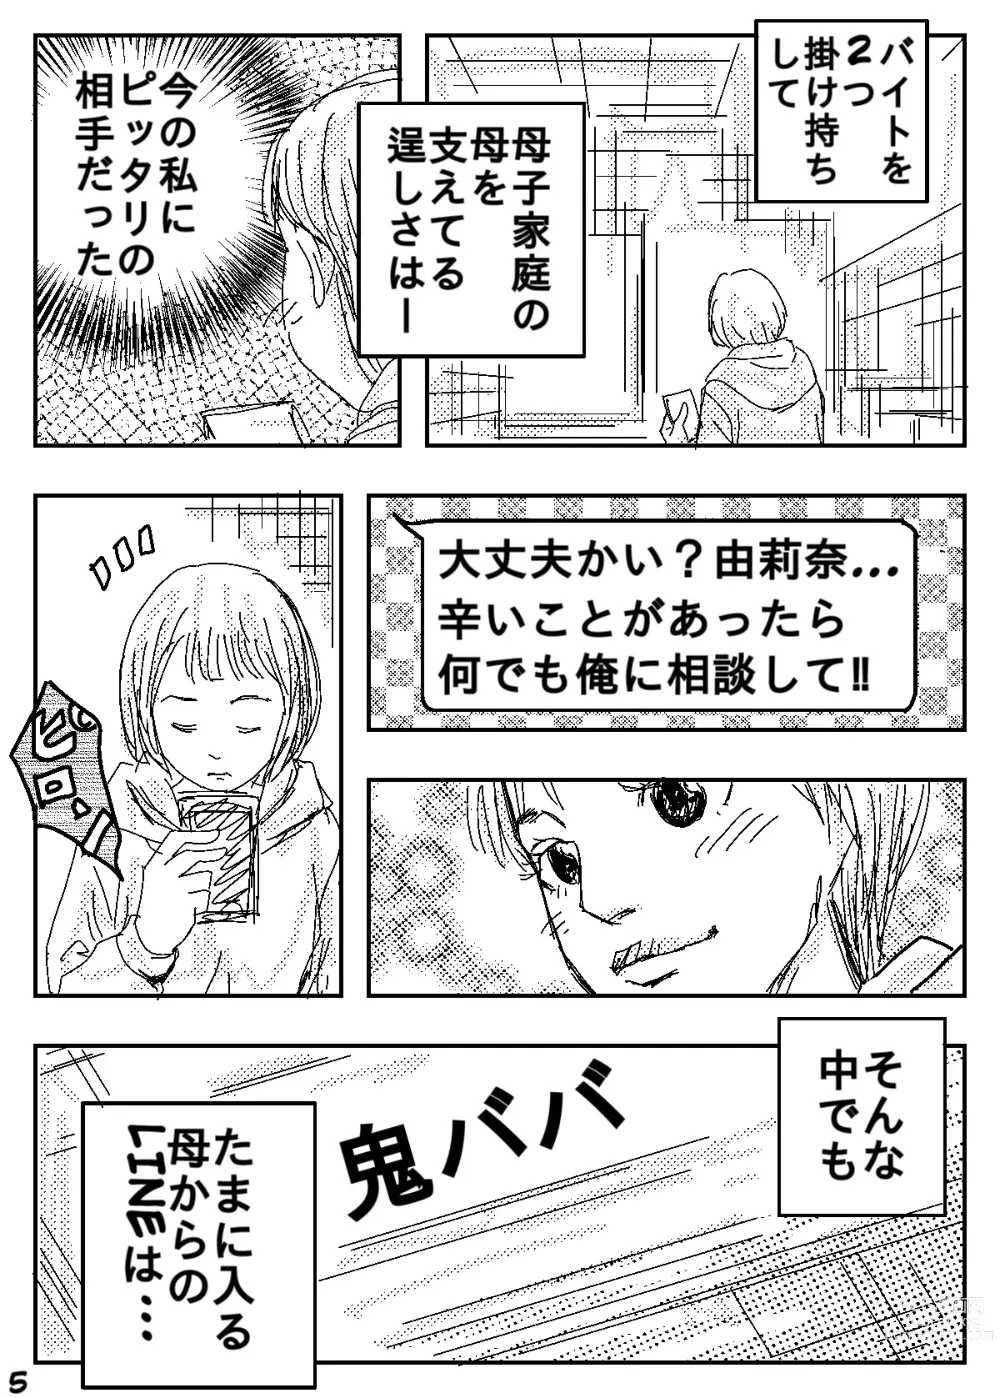 Page 5 of doujinshi Gesu no Kiwami Kazoku